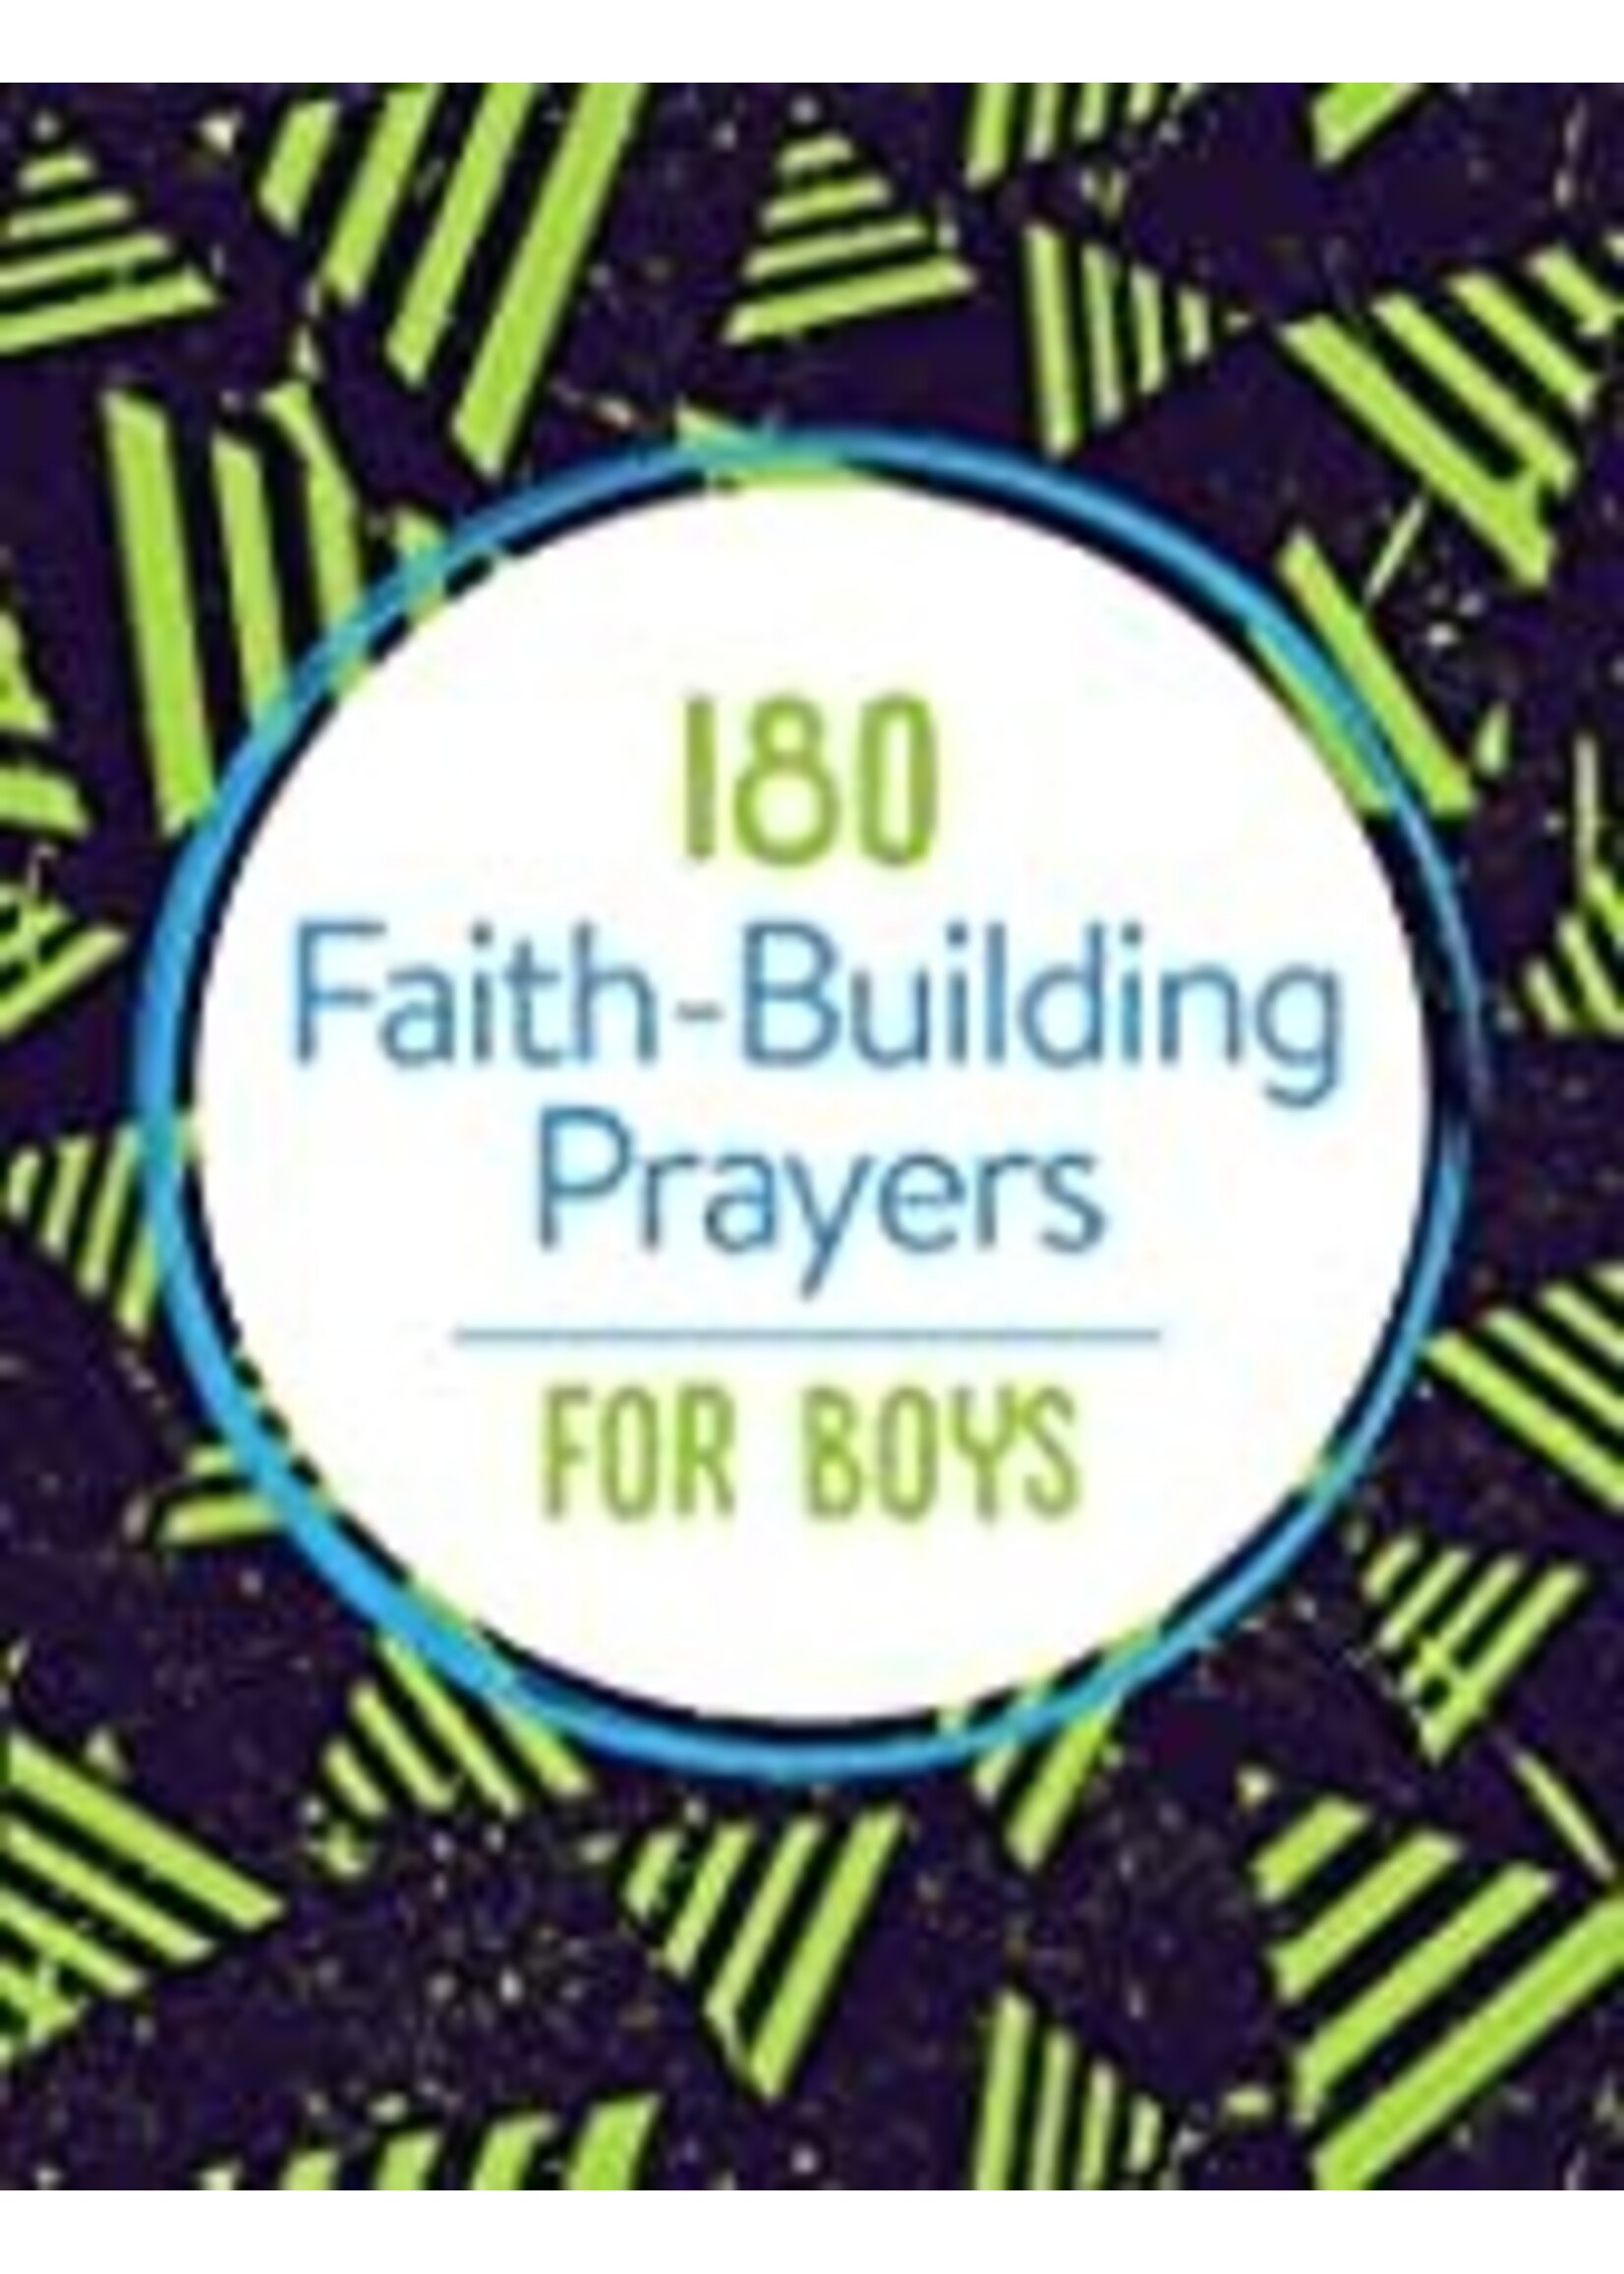 180 FAITH BUILDING PRAYERS FOR BOYS